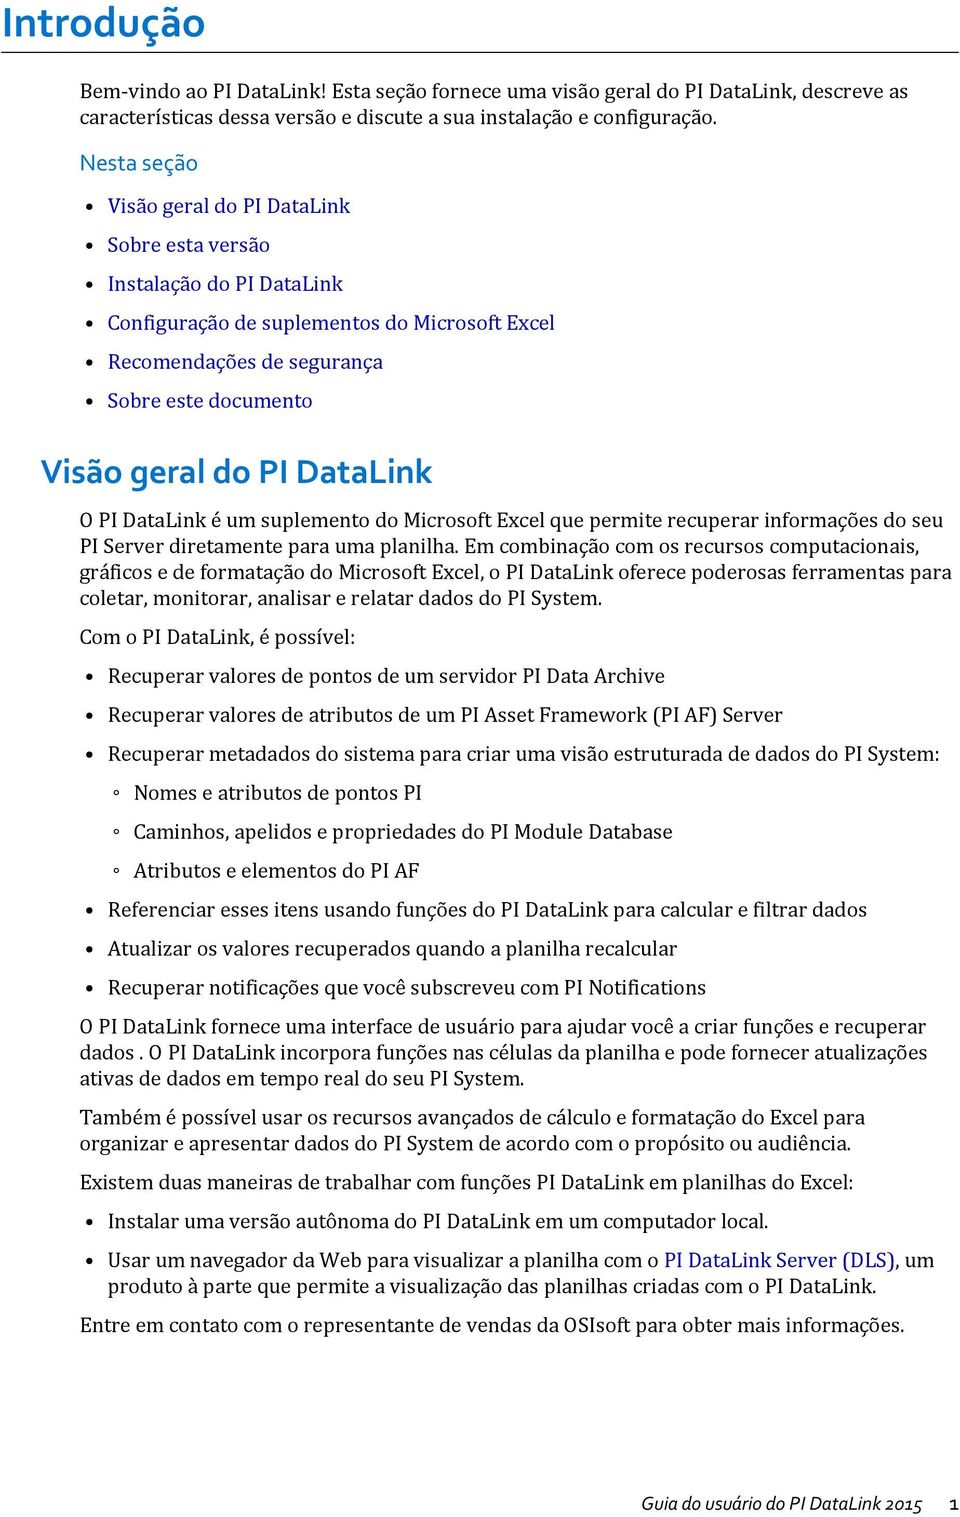 DataLink O PI DataLink é um suplemento do Microsoft Excel que permite recuperar informações do seu PI Server diretamente para uma planilha.